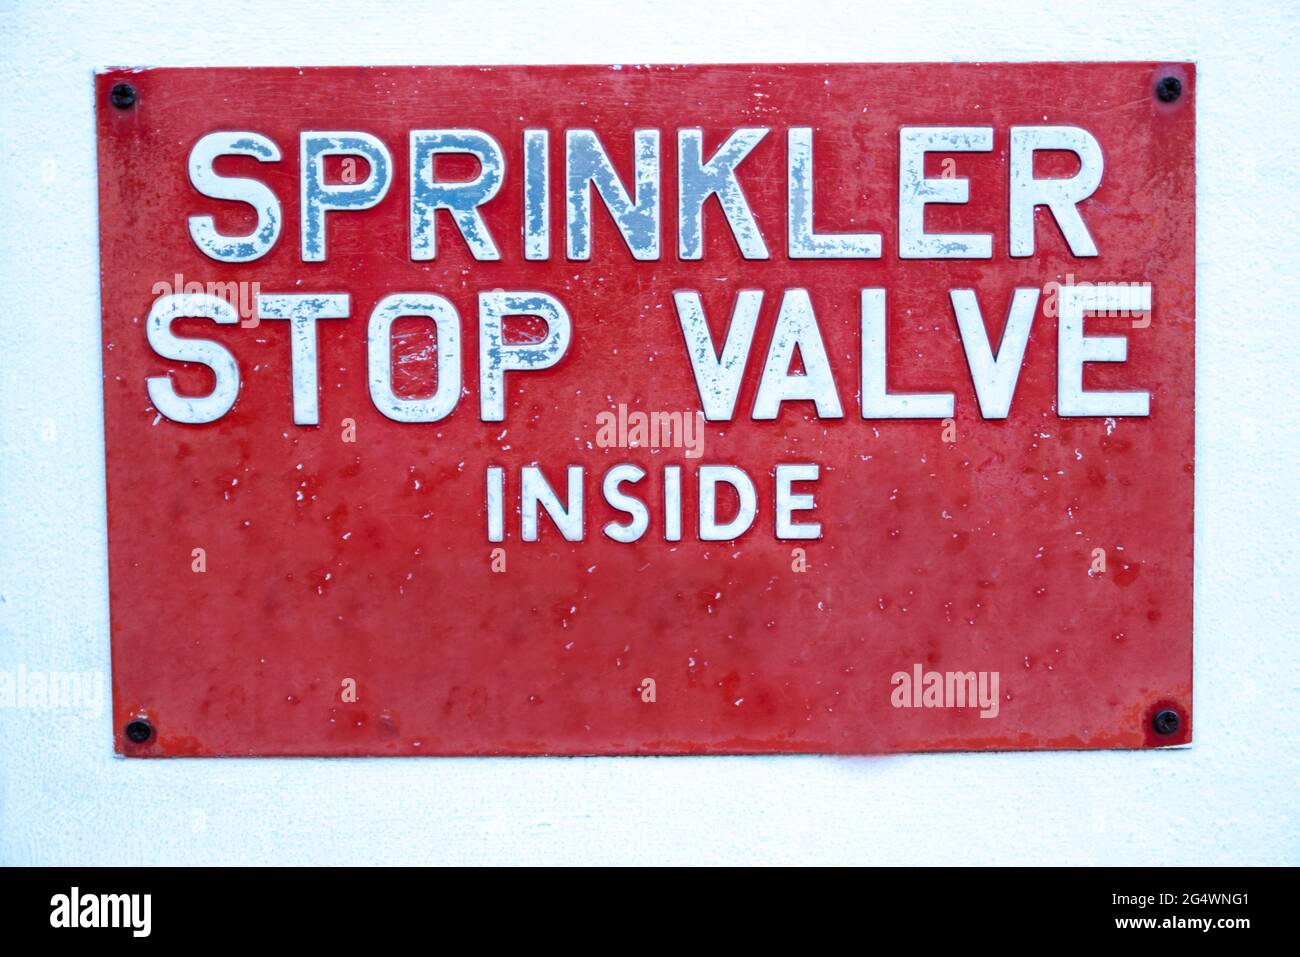 'Sprinkler Stop Valve Inside' Sign Stock Photo